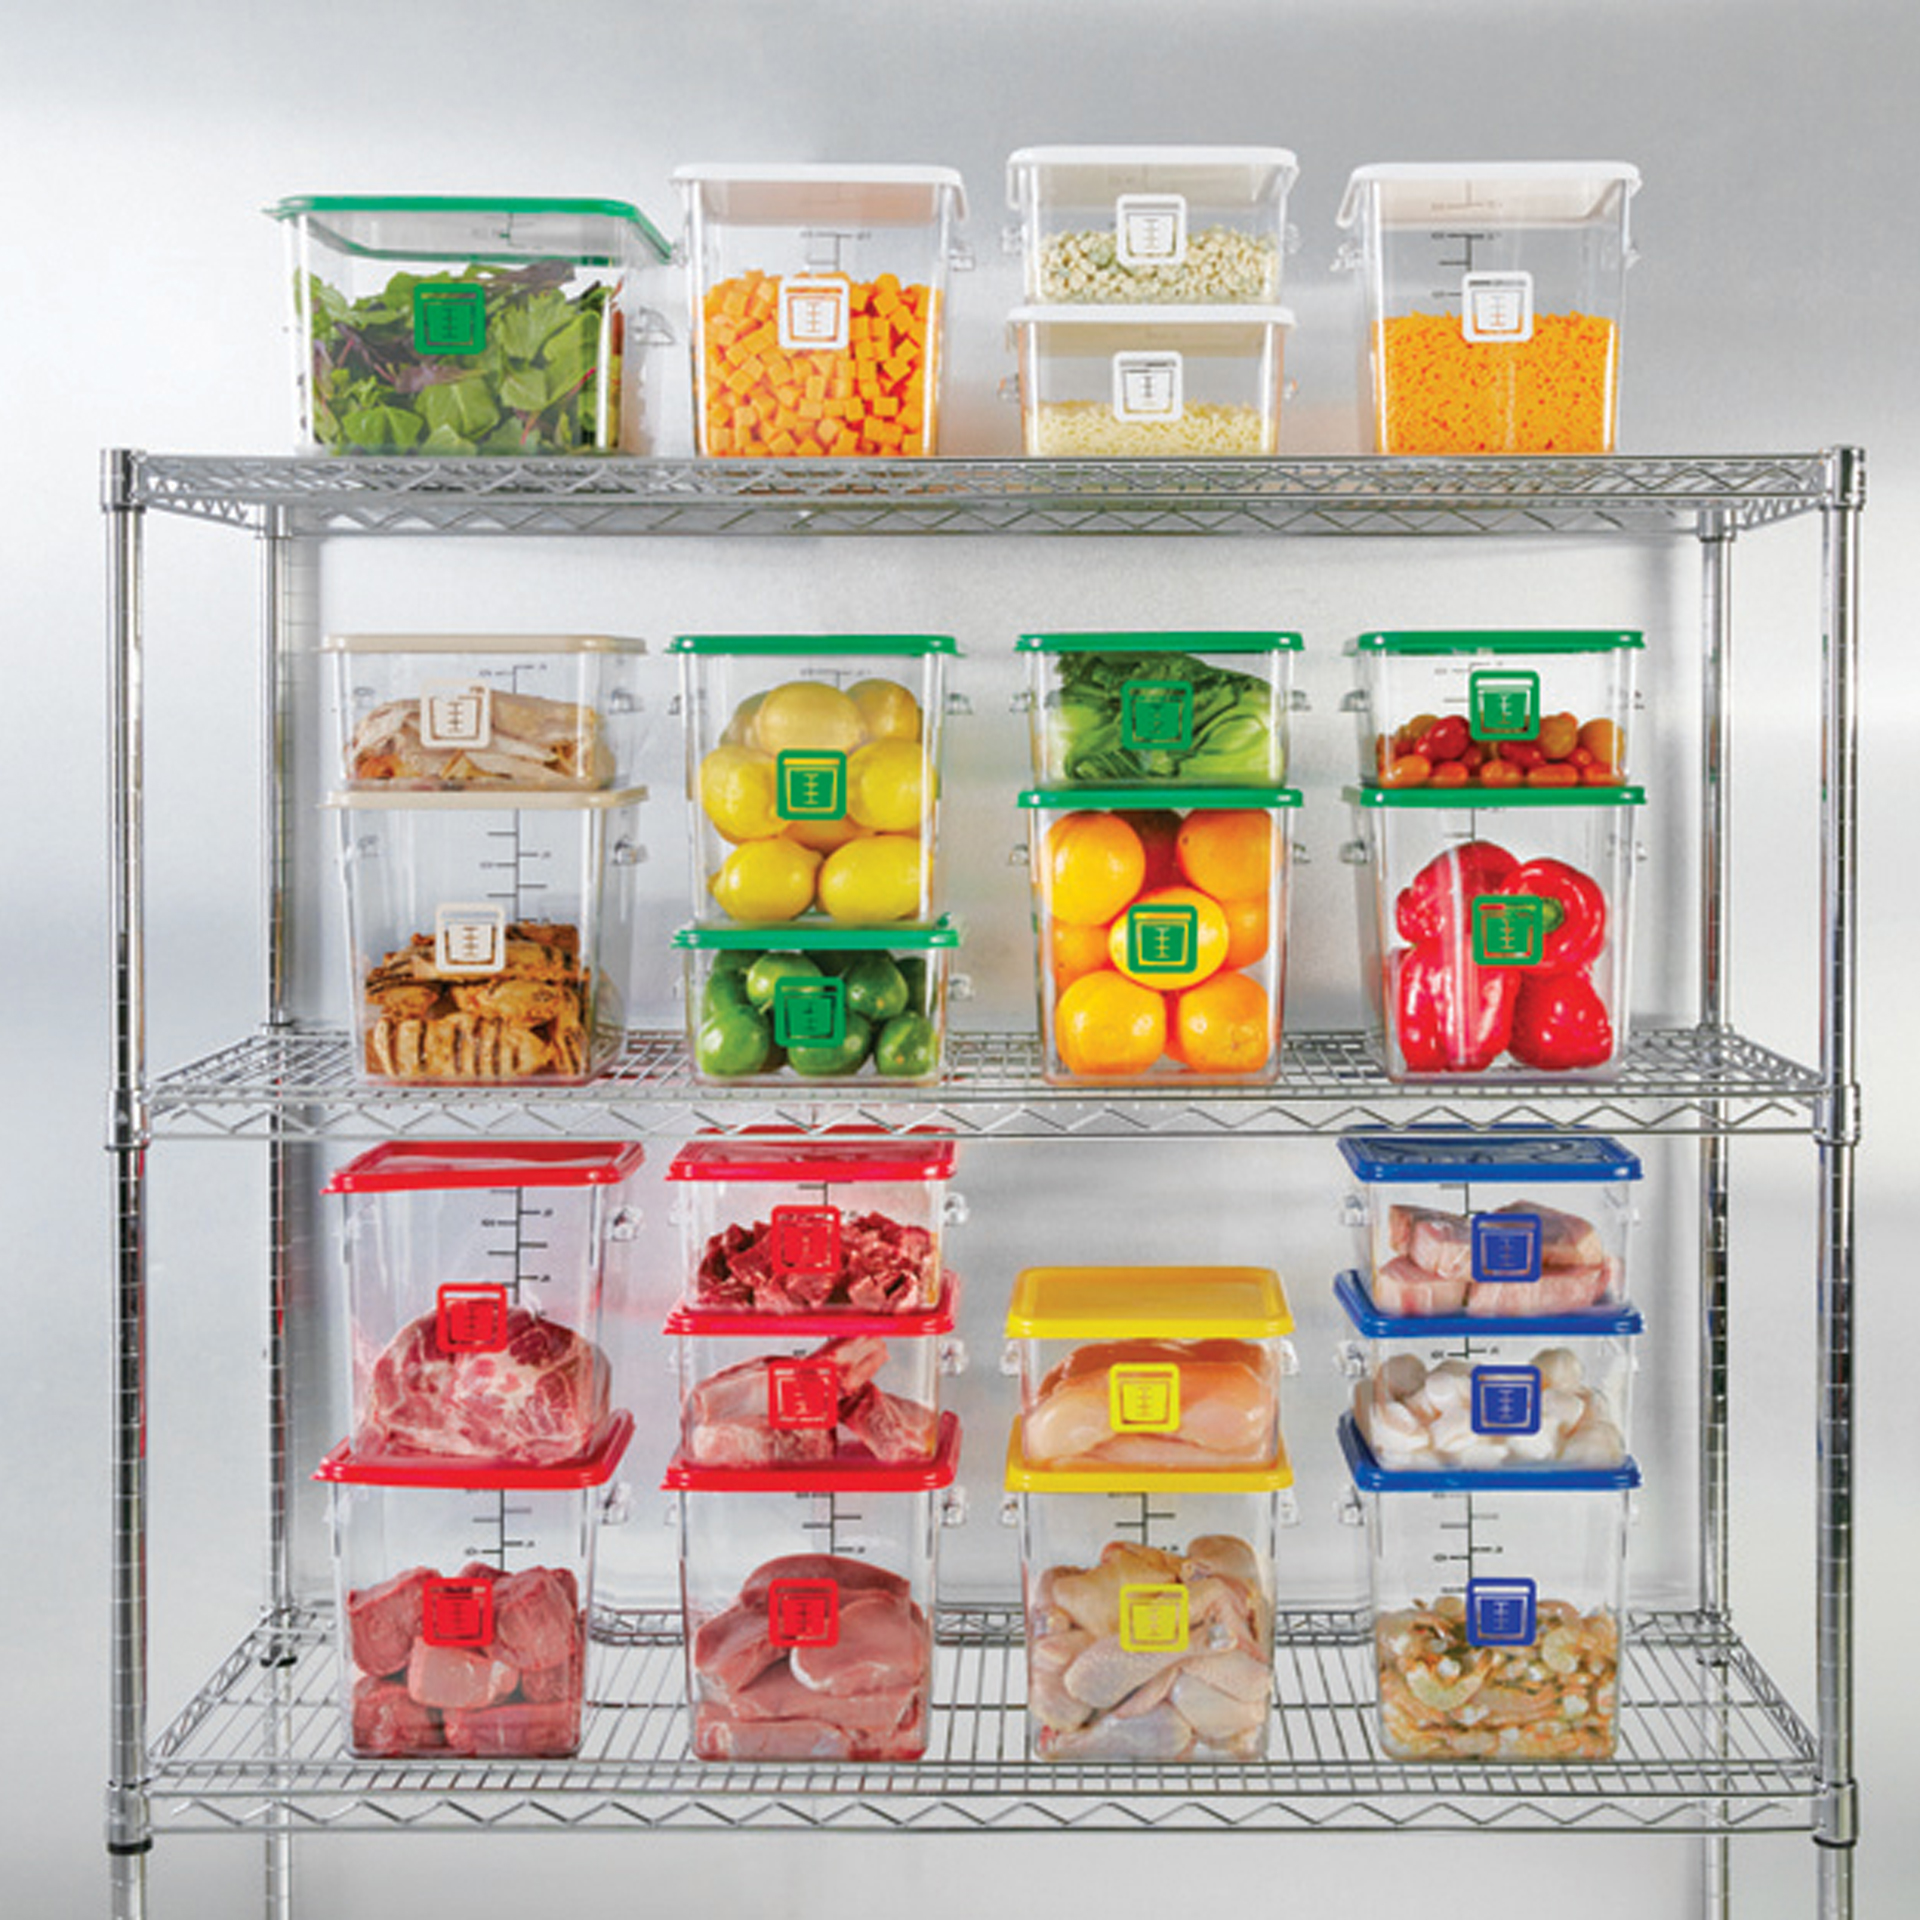 กล่องเก็บวัตถุดิบอาหารสี่เหลี่ยม Color-Coded Square Container Clear ขนาด 12 qt สีเขียว